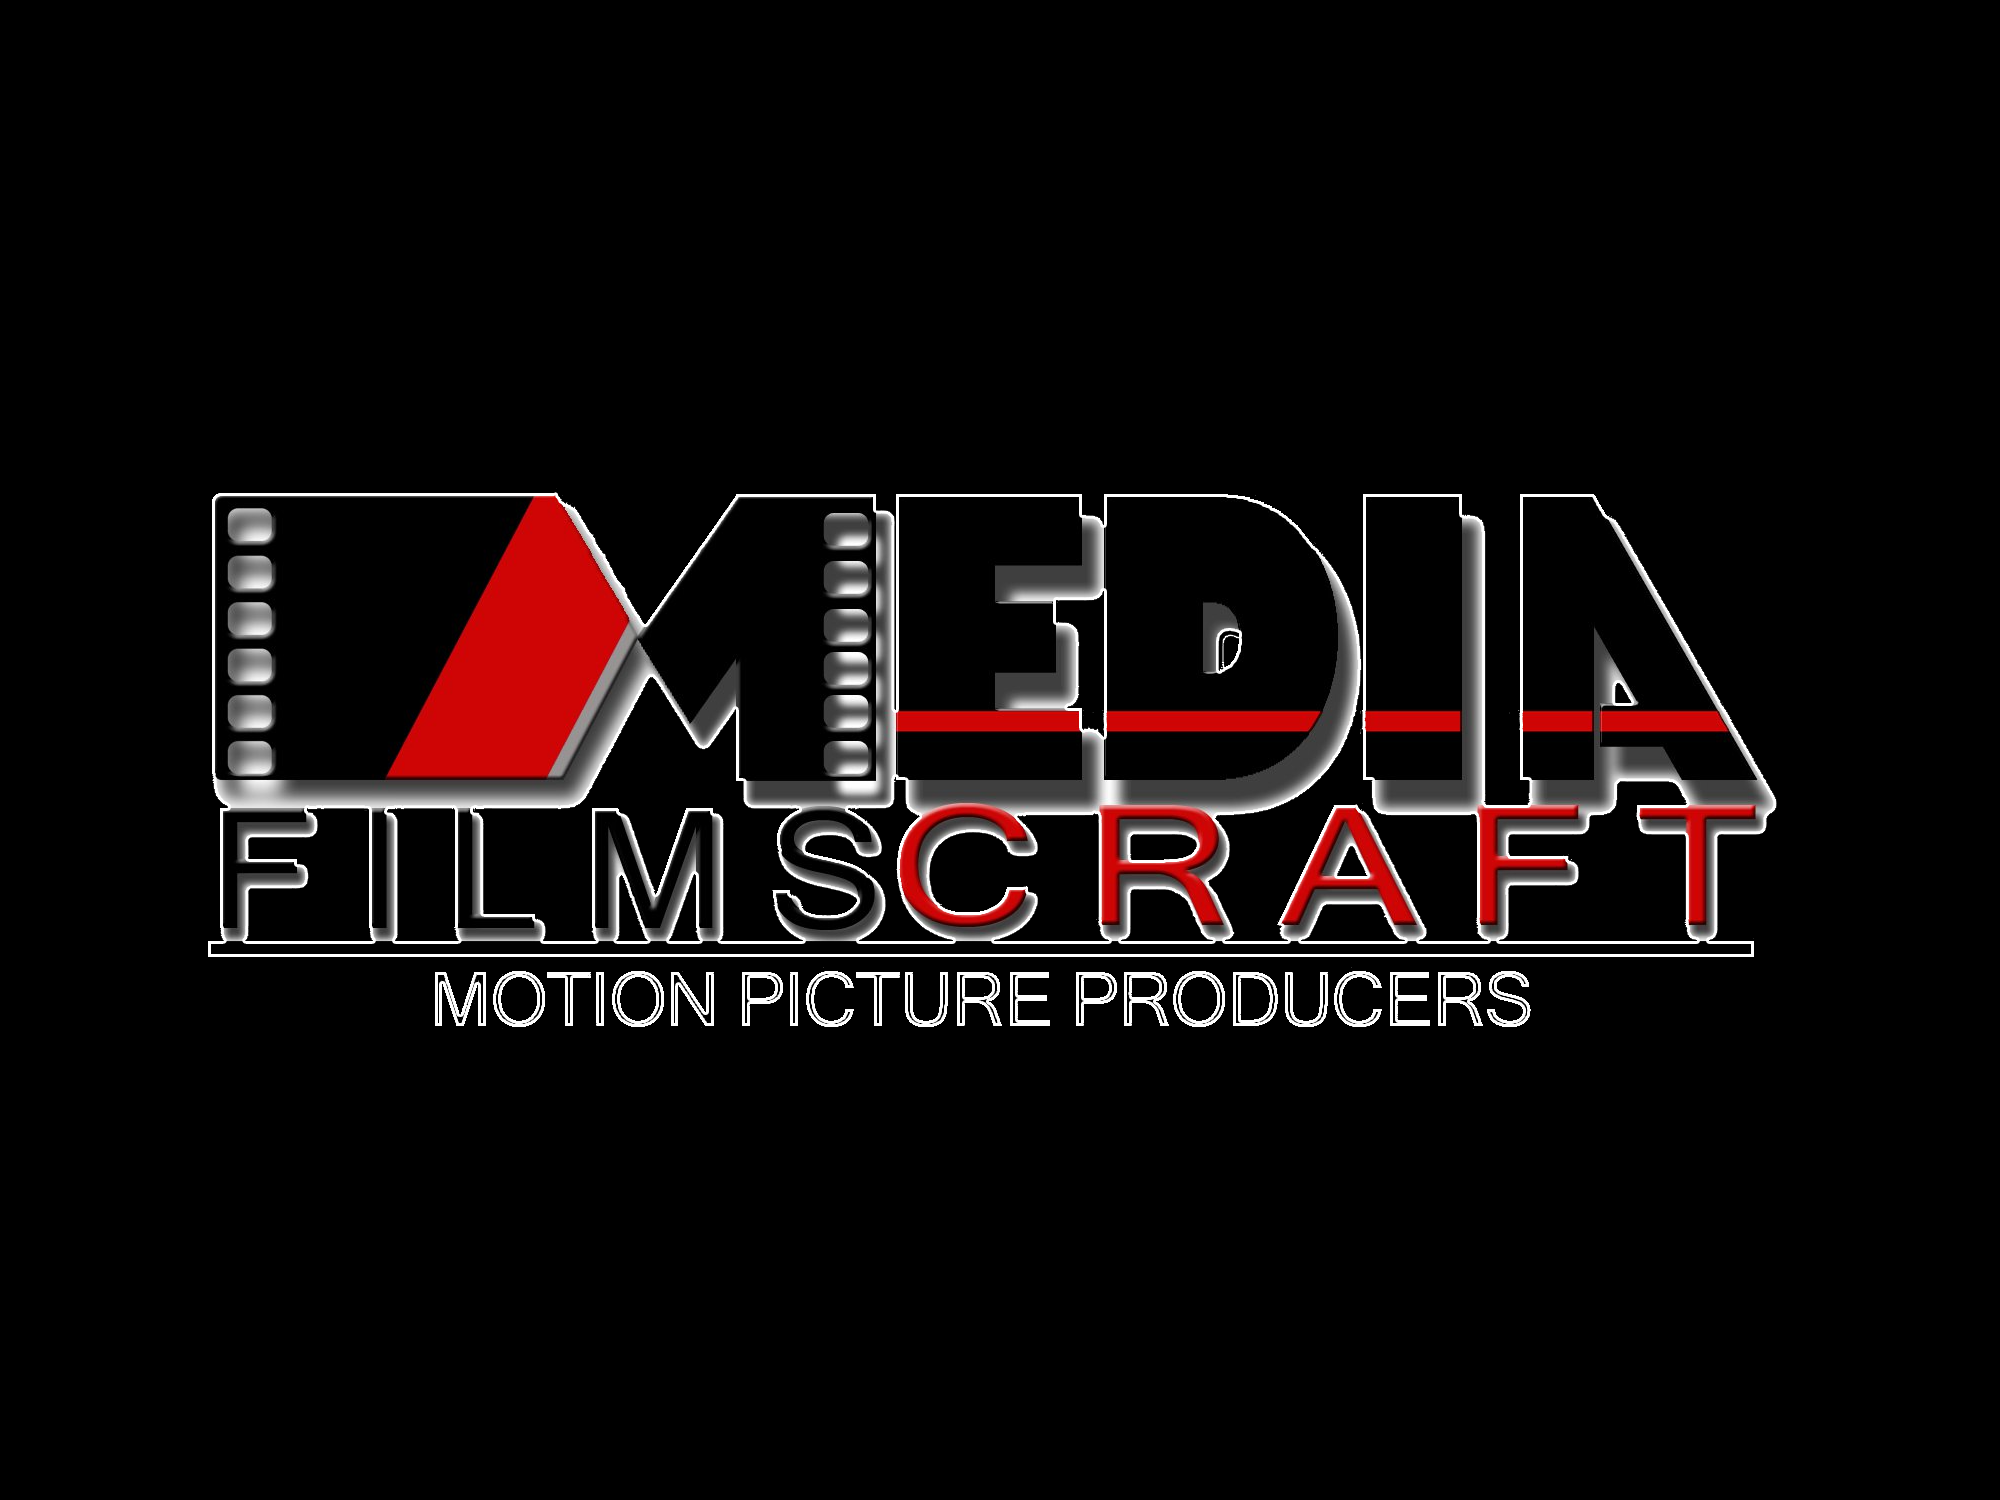 Media Films Craft 3